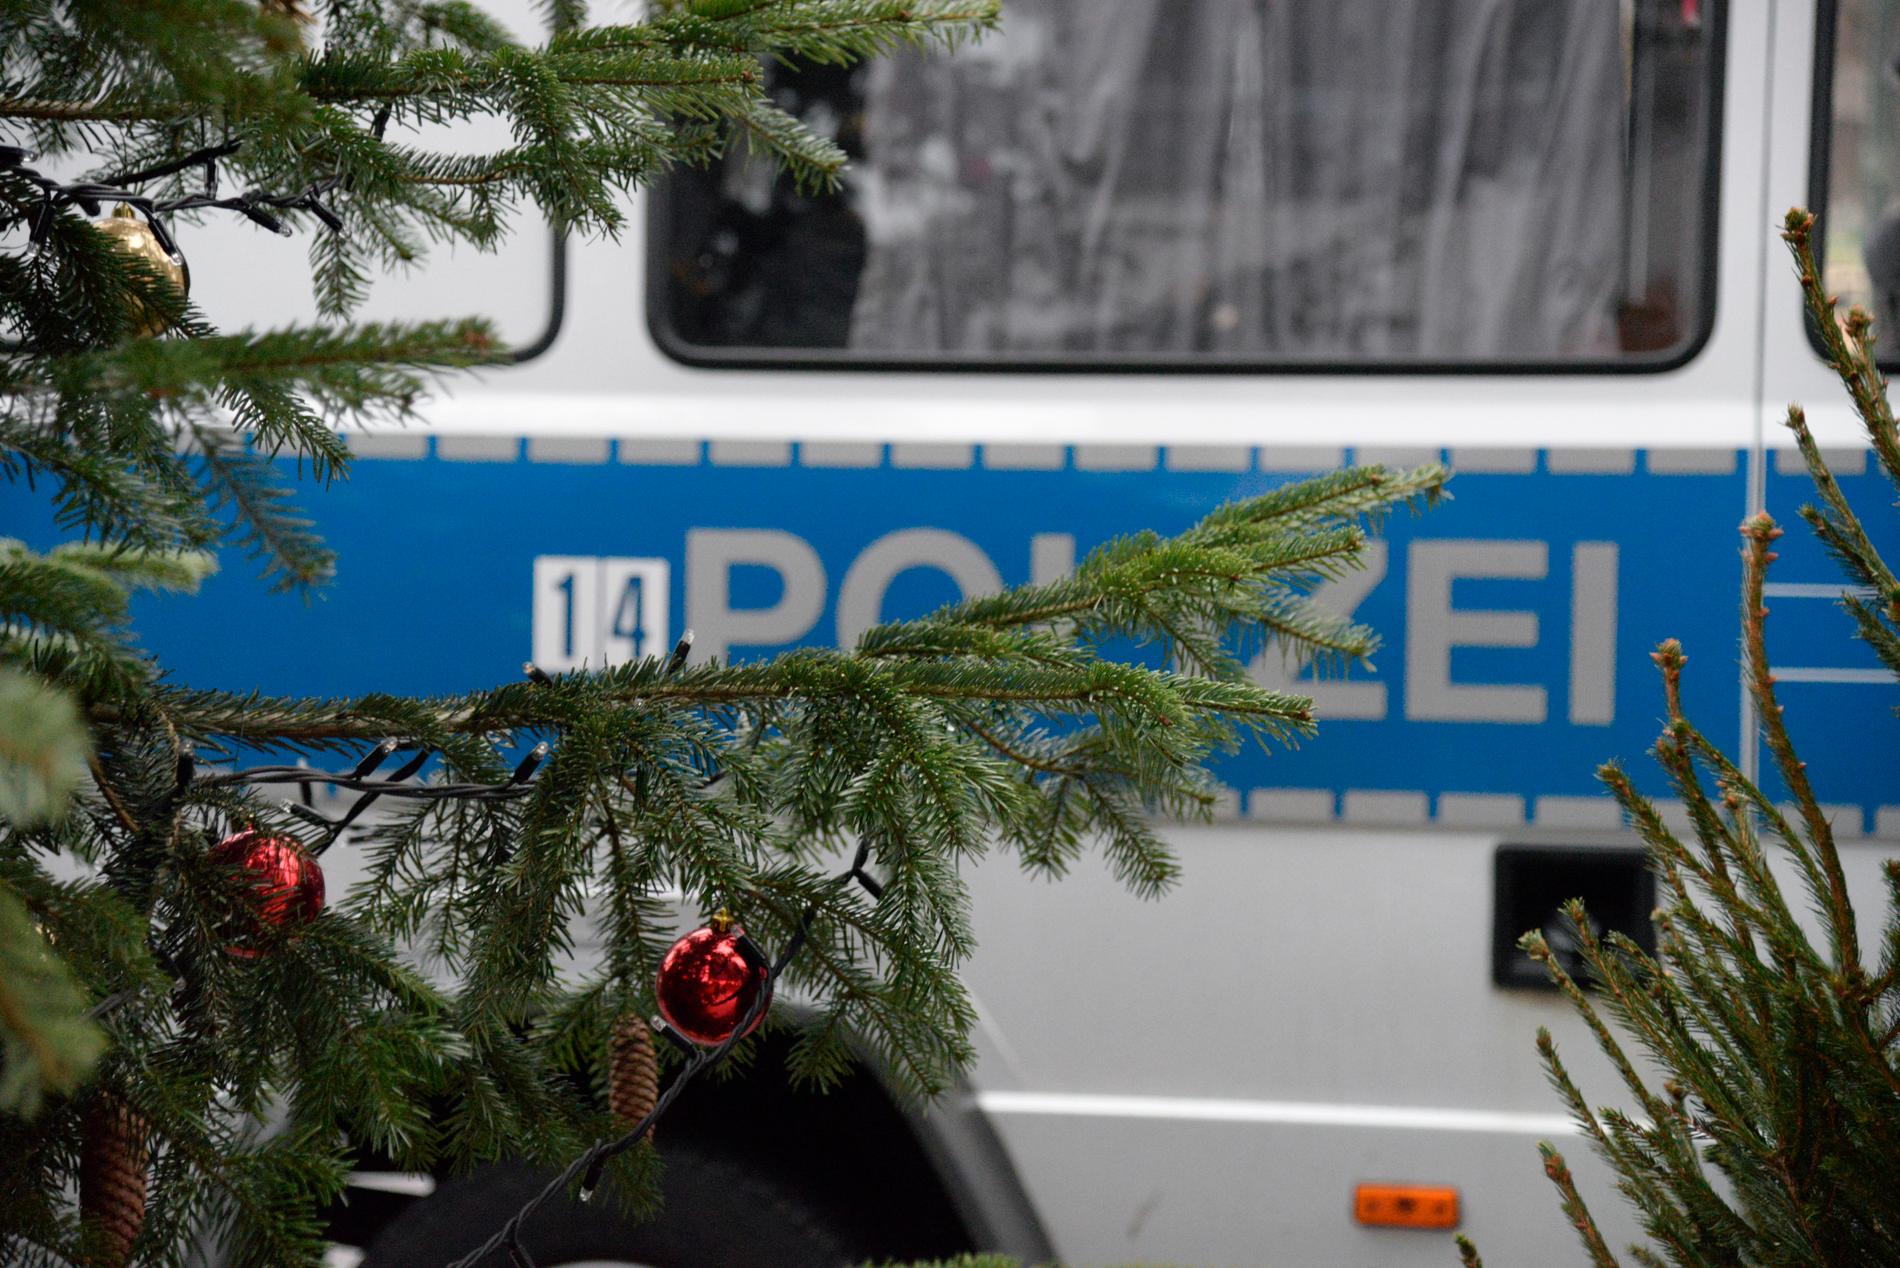 13 människor dog i terrorattentat mot julmarknaden i Berlin 2016. 